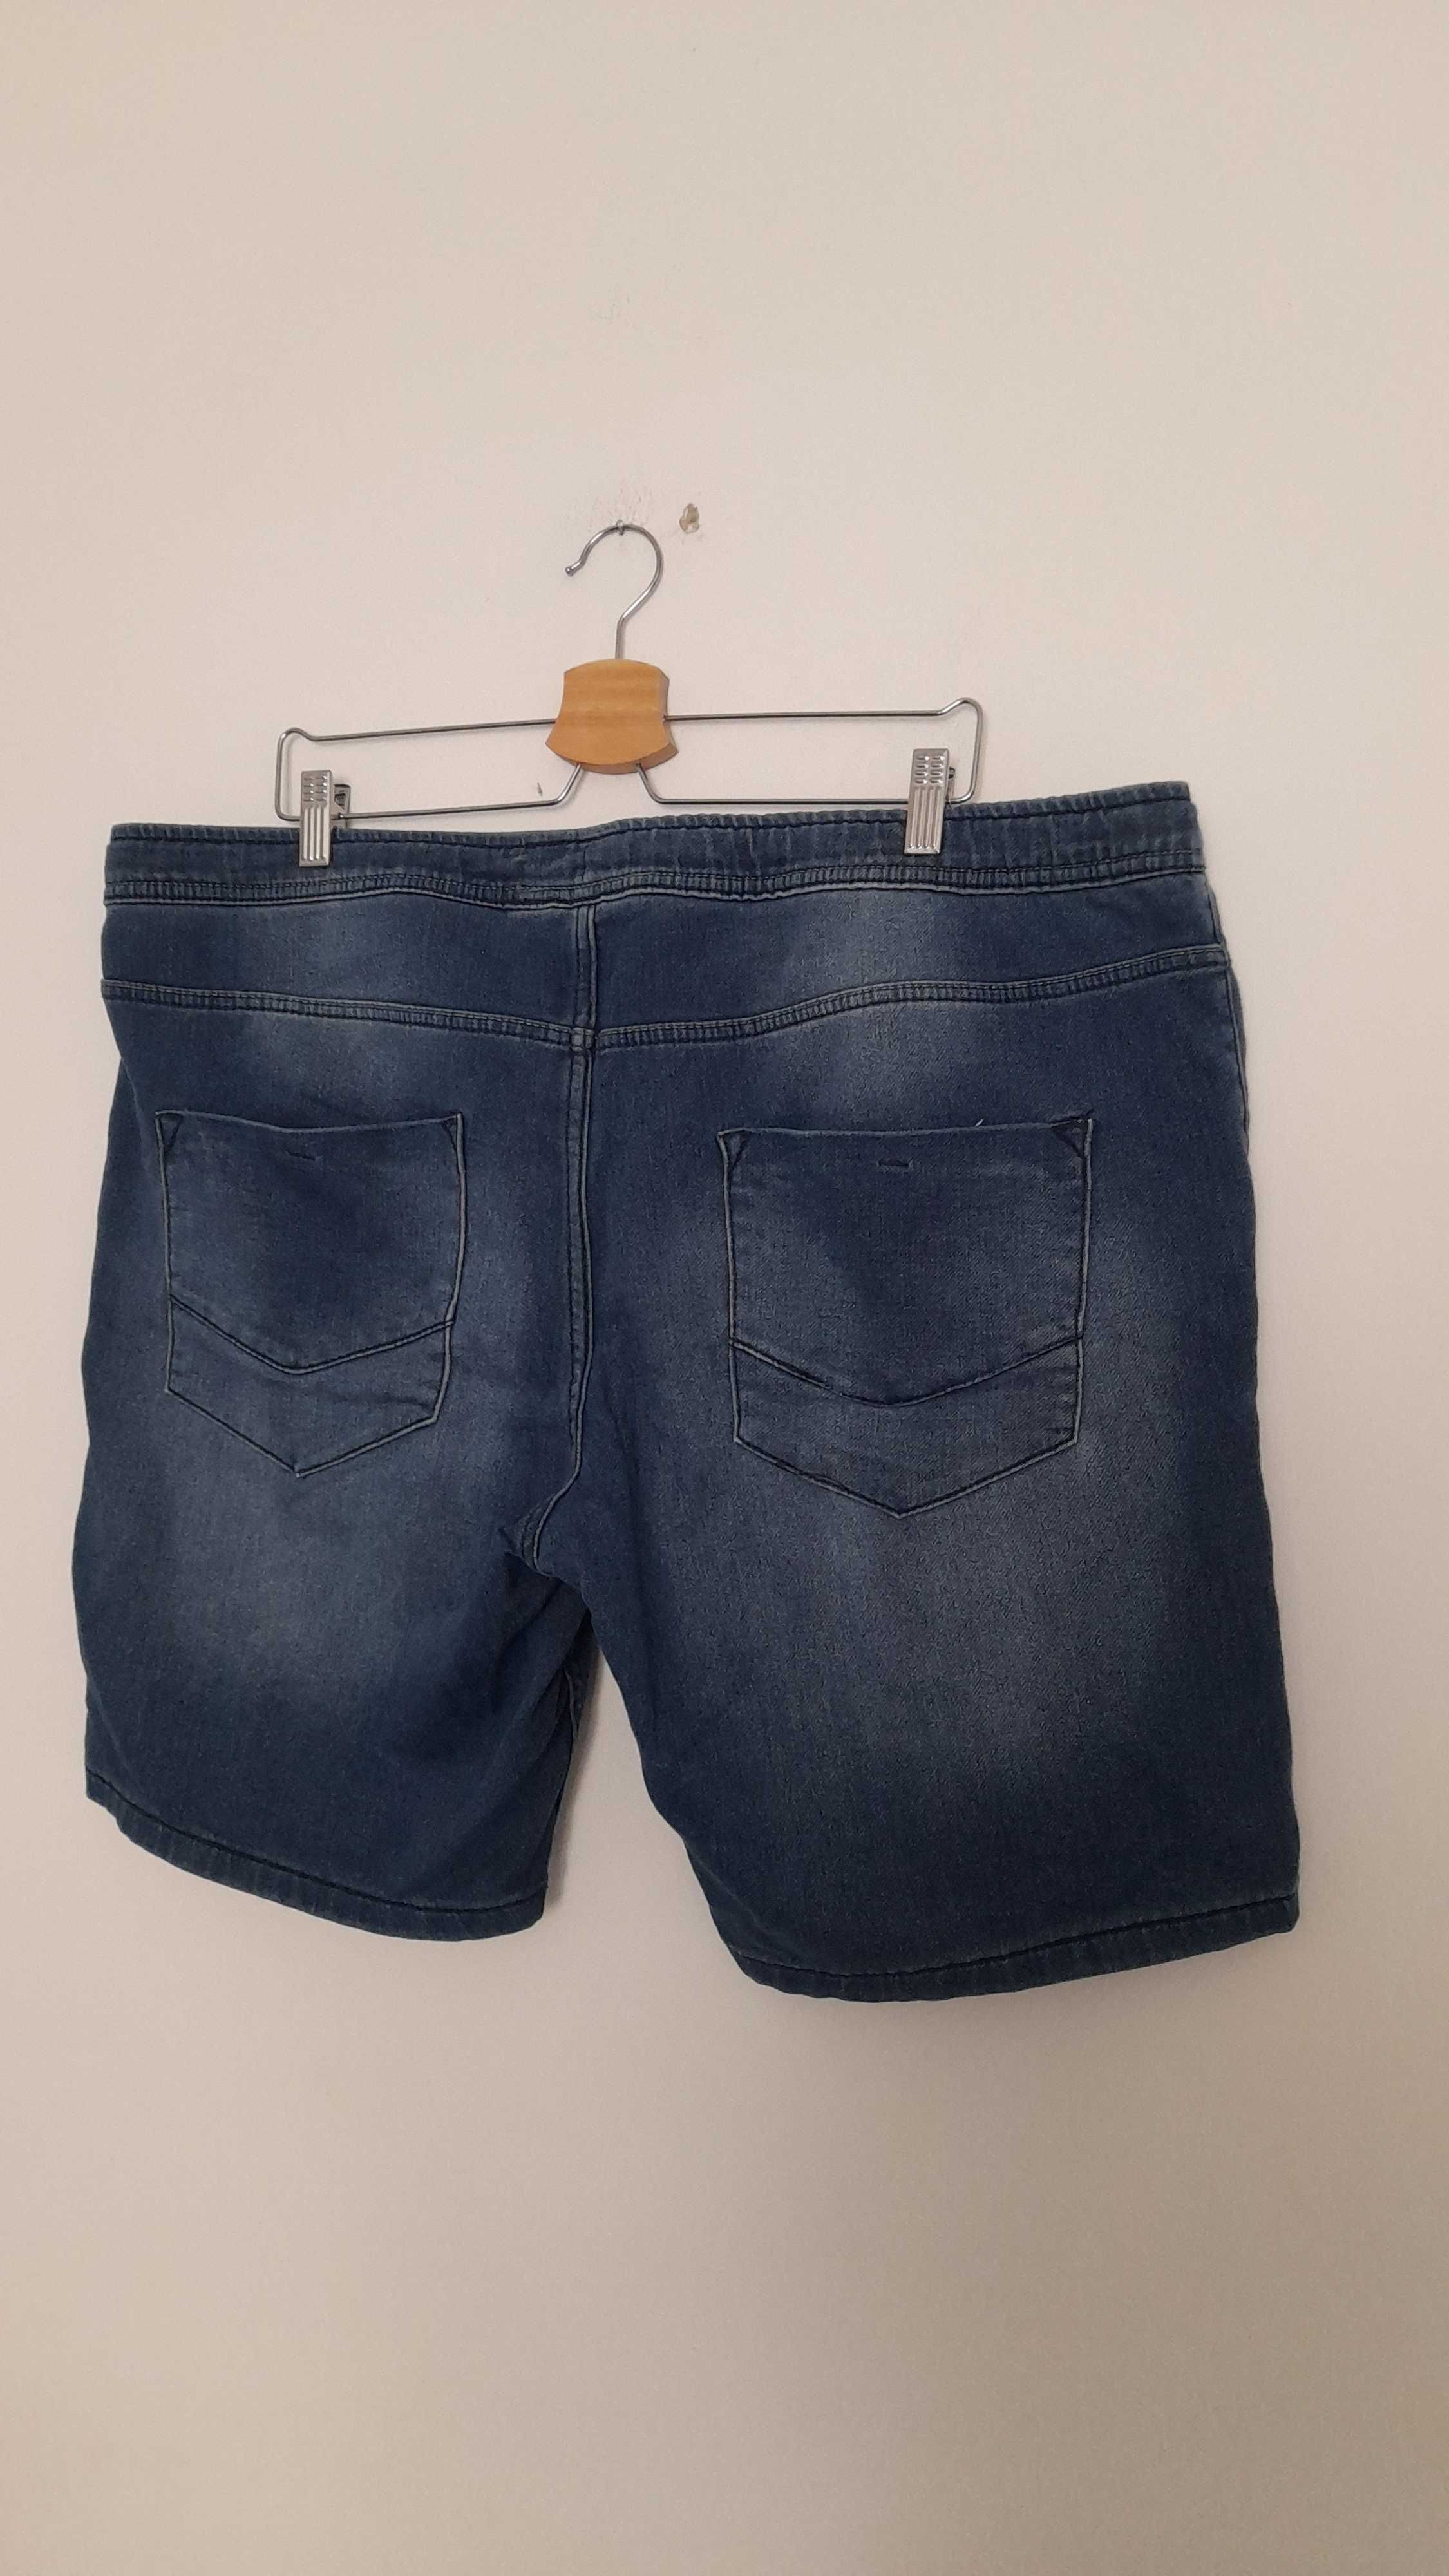 Niebieskie elastyczne spodenki męskie ala jeansowe bawełniane 52